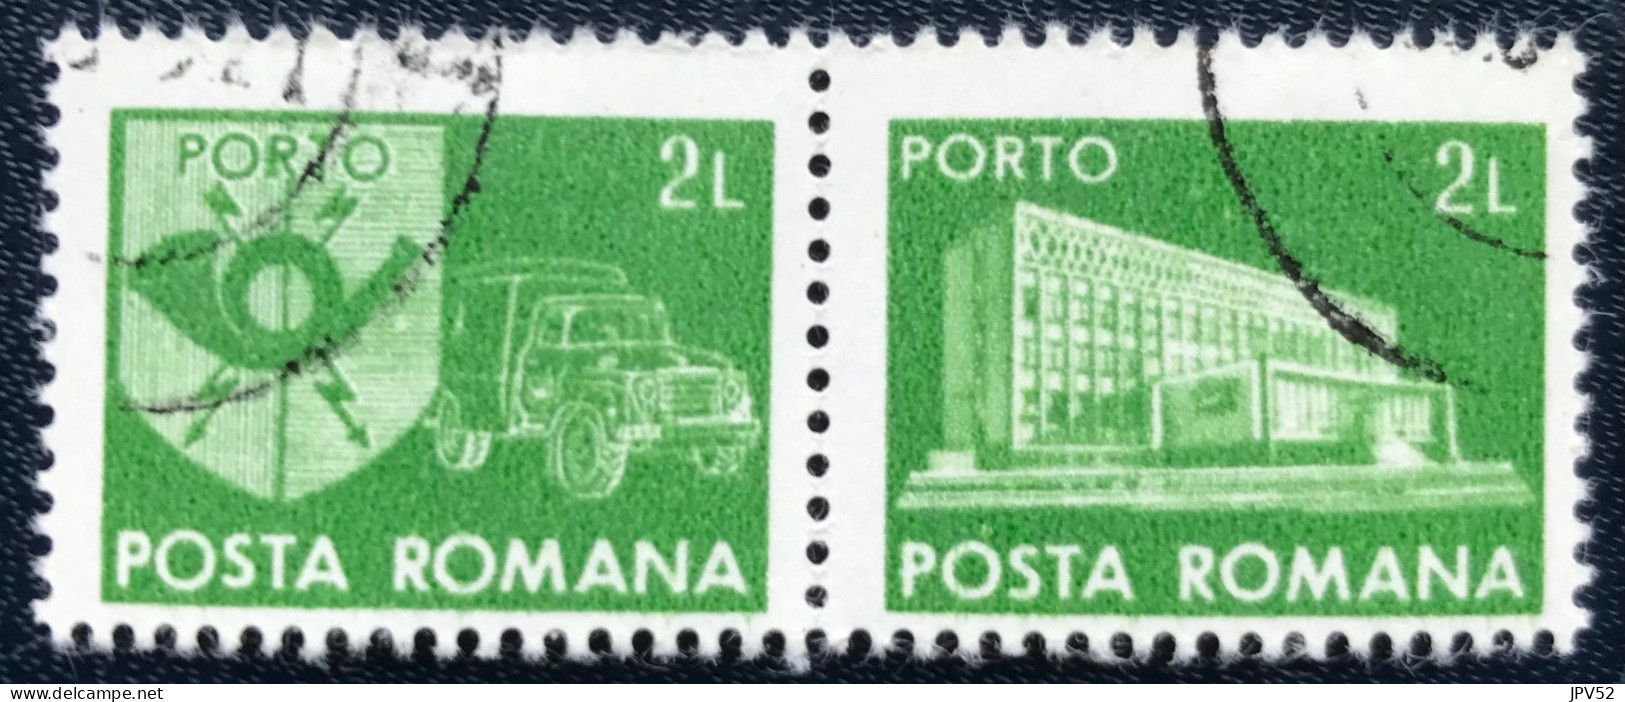 Romana - Roemenië - C14/53 - 1982 - (°)used - Michel 128 - Postkantoor & Postembleem & Postvoertuig - Impuestos